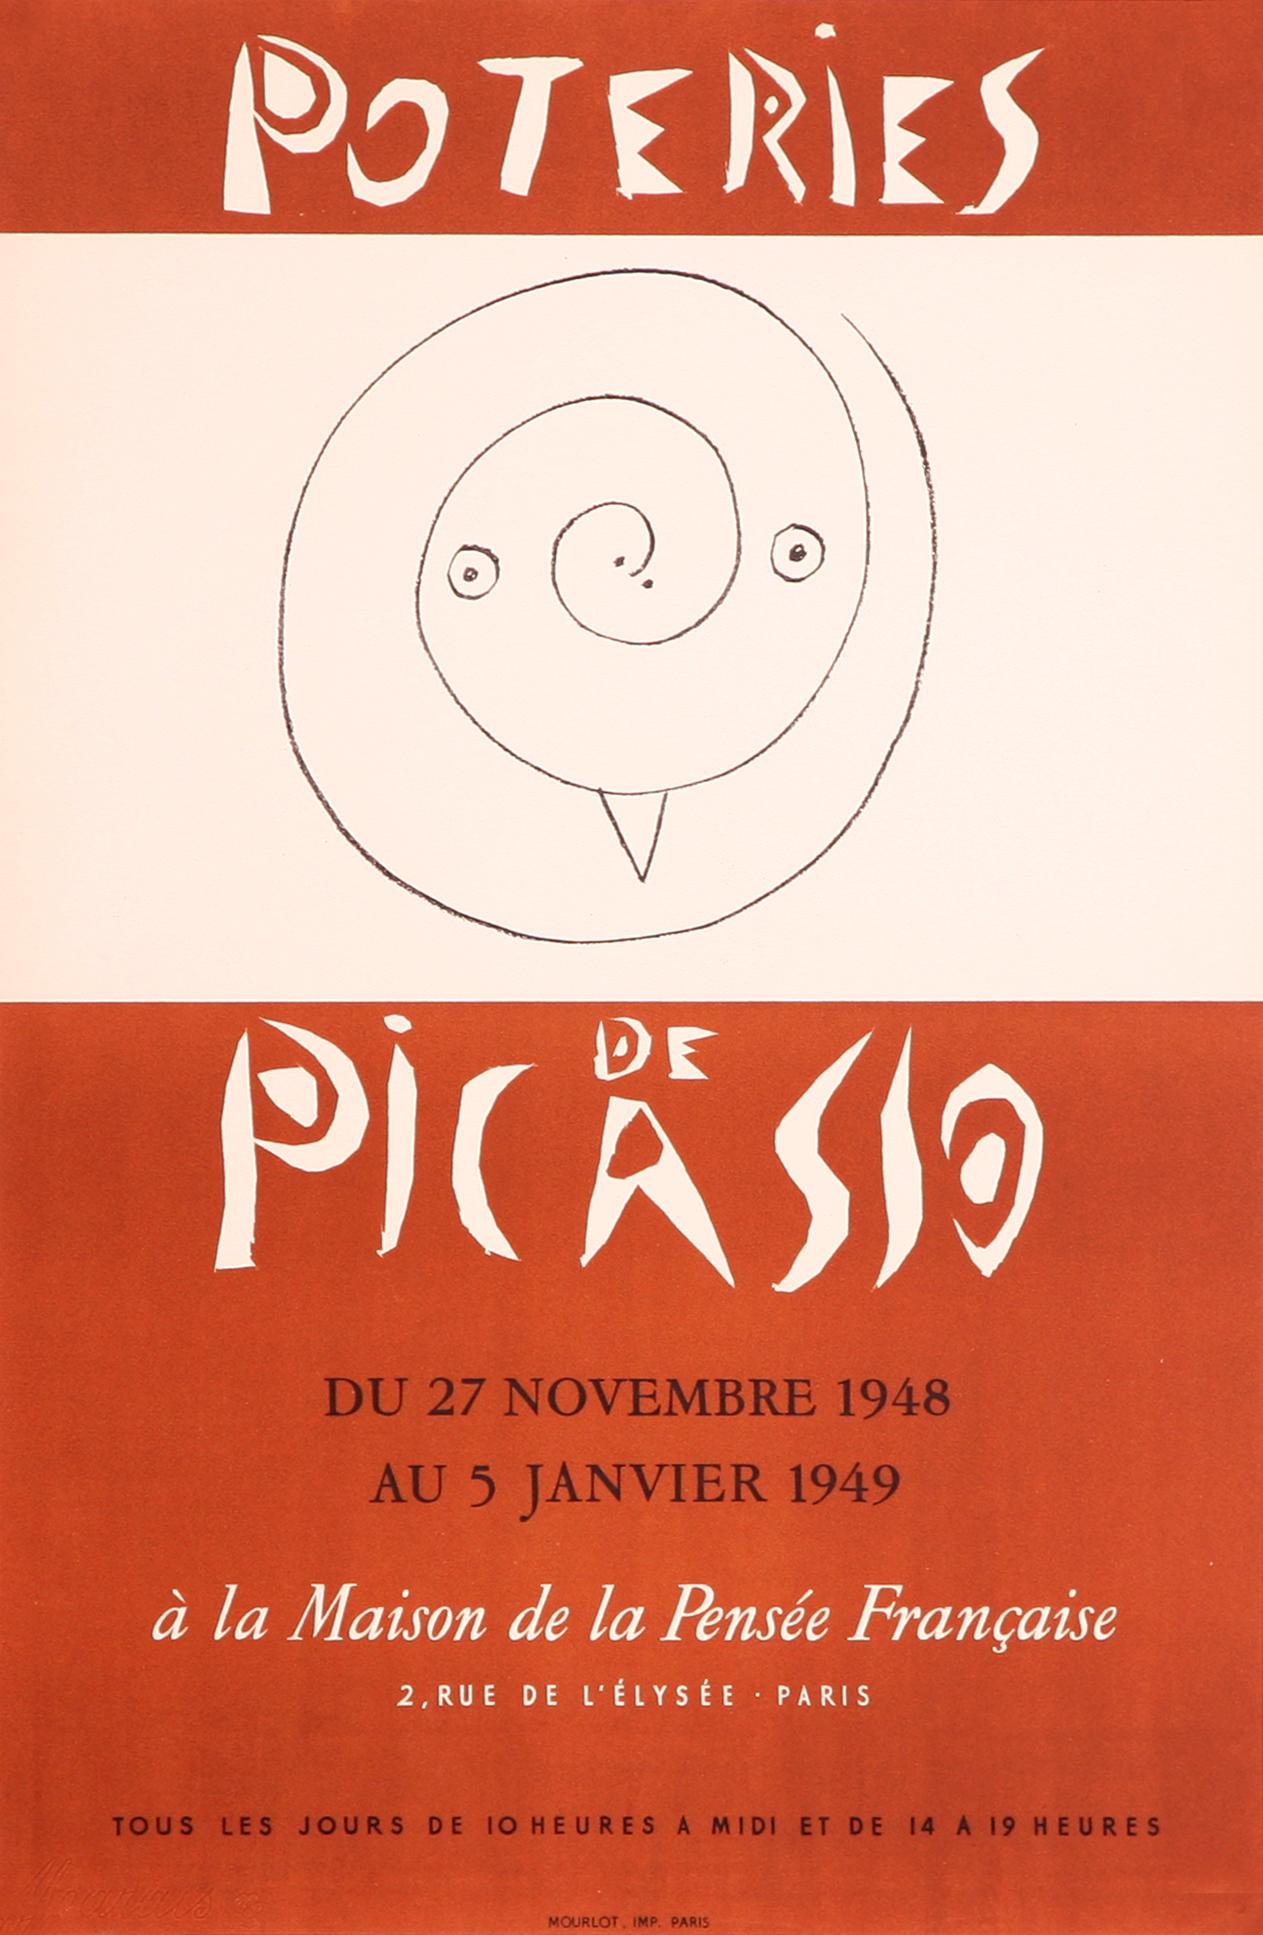 Dieses seltene und schöne lithografische Plakat wurde in den Ateliers Mourlot hergestellt, um für eine Ausstellung von Töpferwaren und Keramiken zu werben, die Pablo Picasso 1948 in Südfrankreich geschaffen hatte. Es wurde von Picasso entworfen und